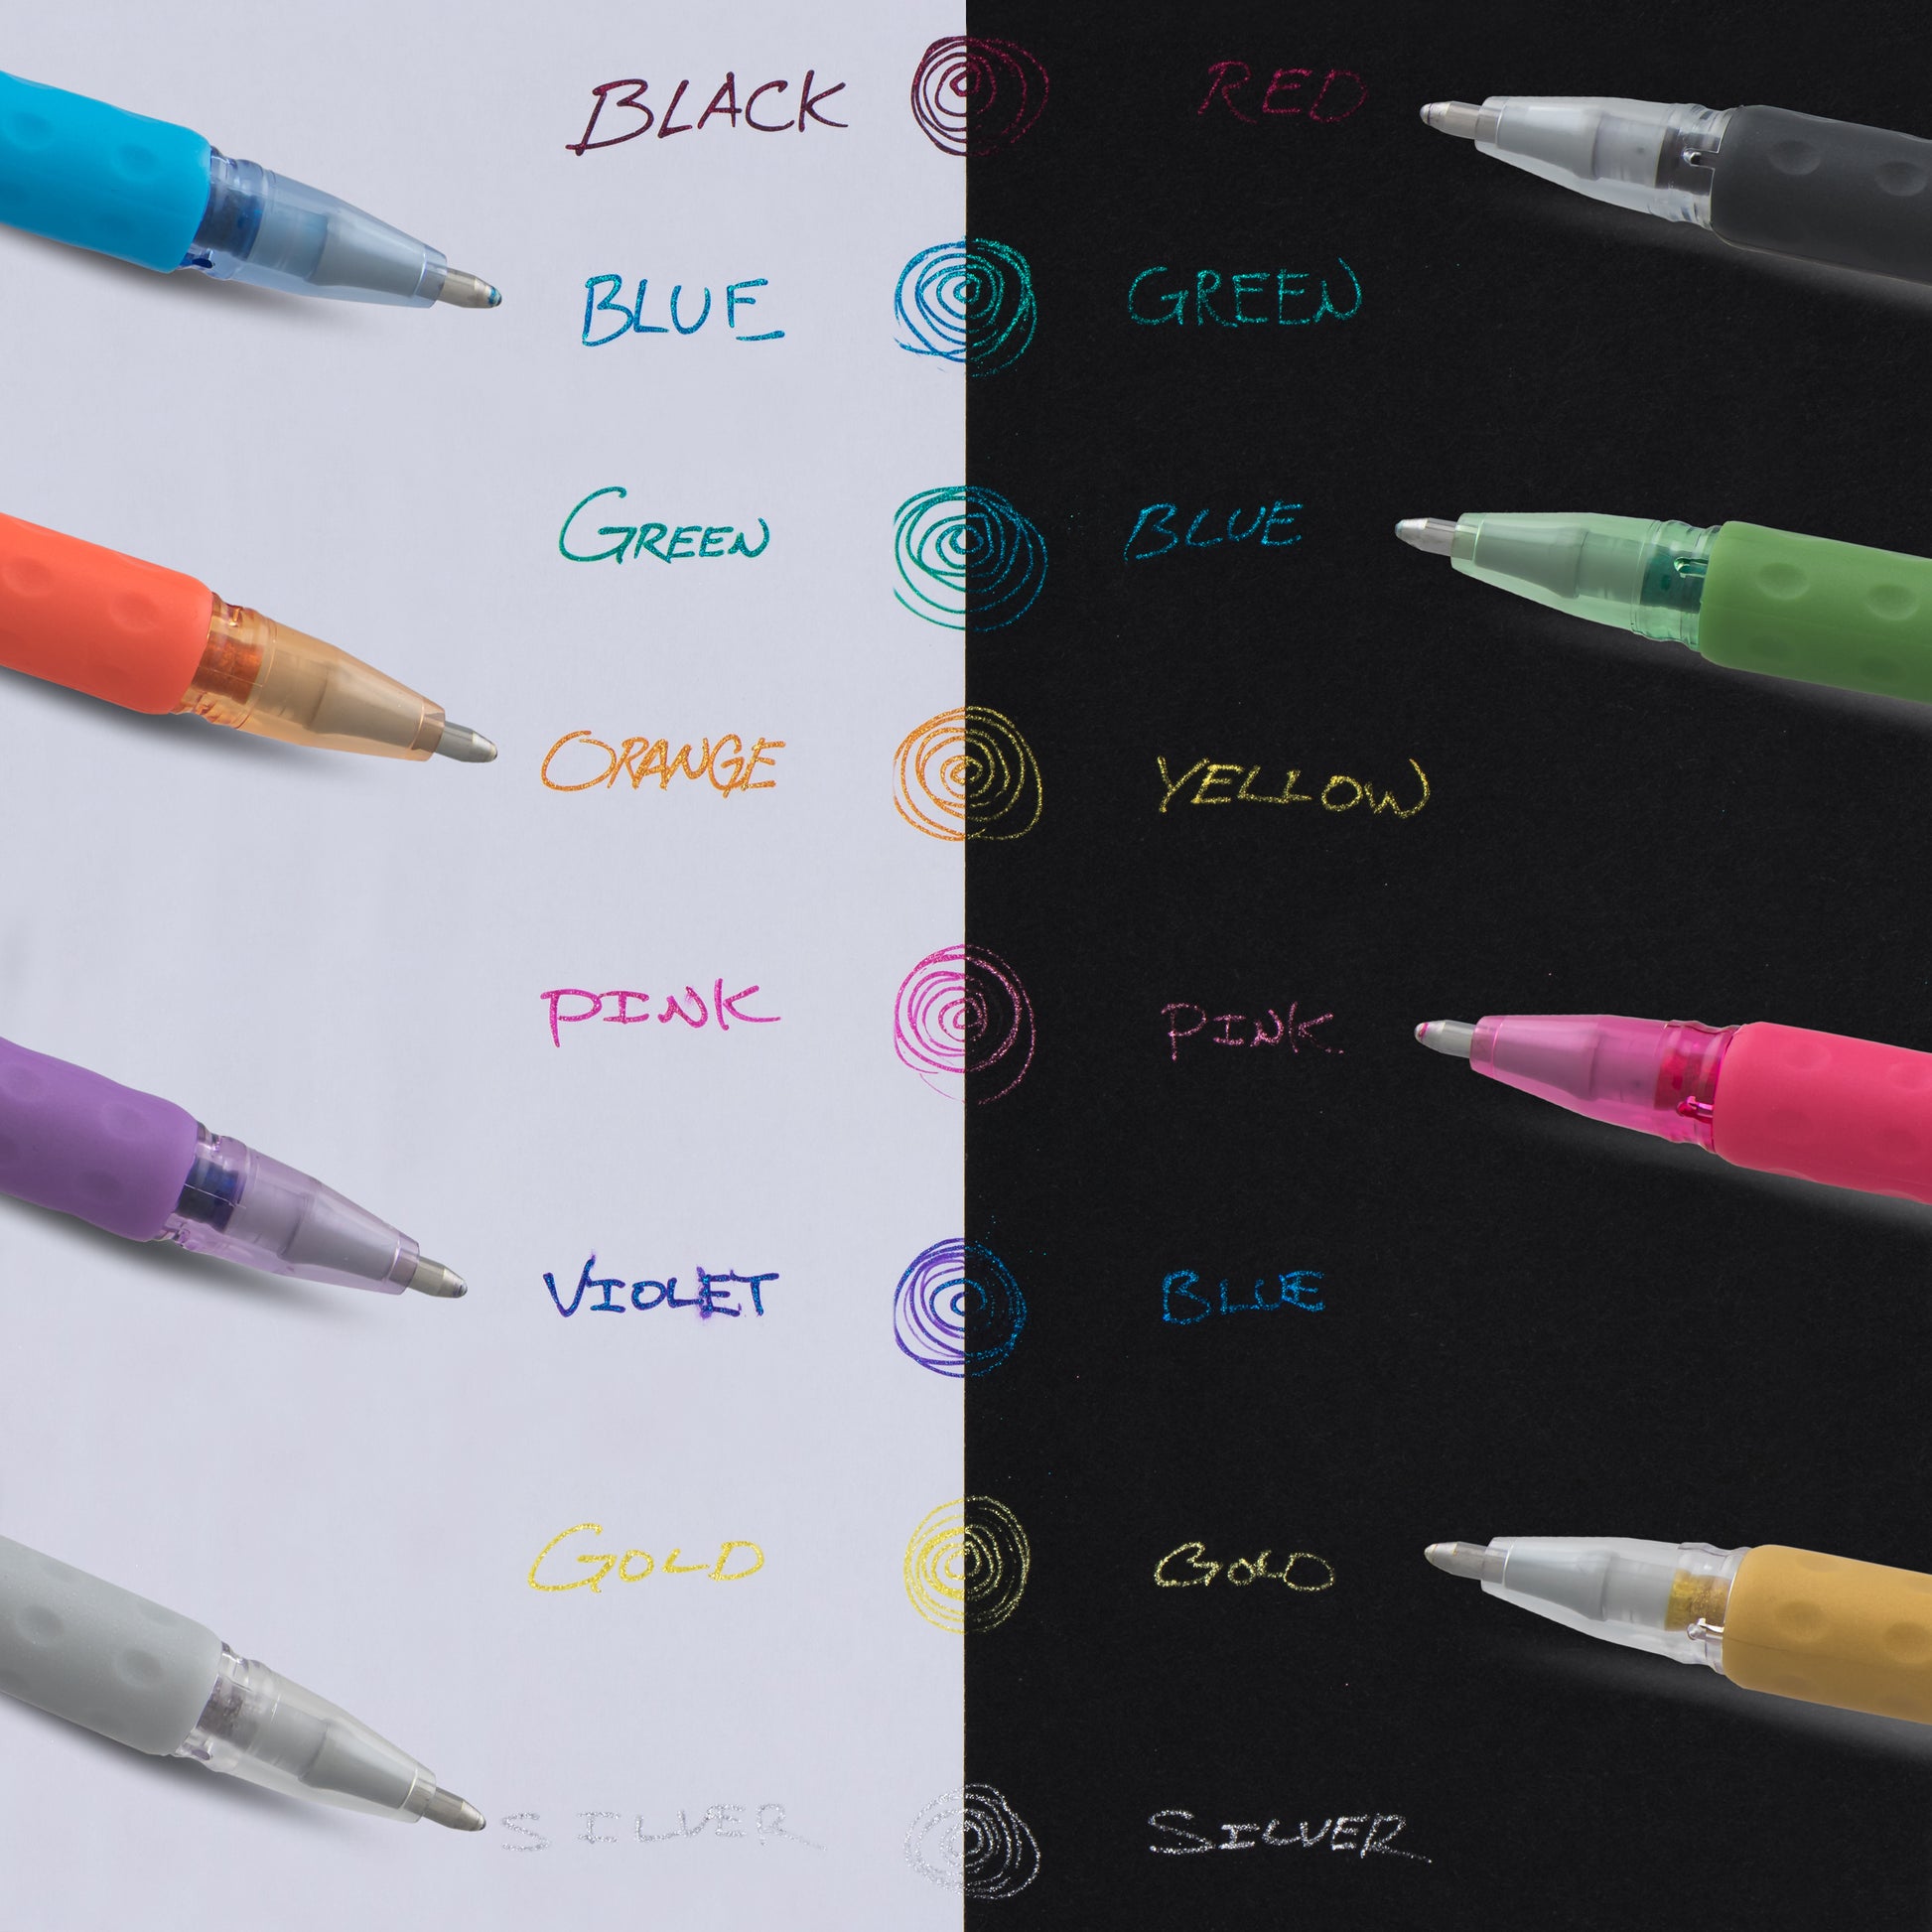 Cricut Marker Huge Lot Gel Pens Metallic Markers Pens Glitter Used